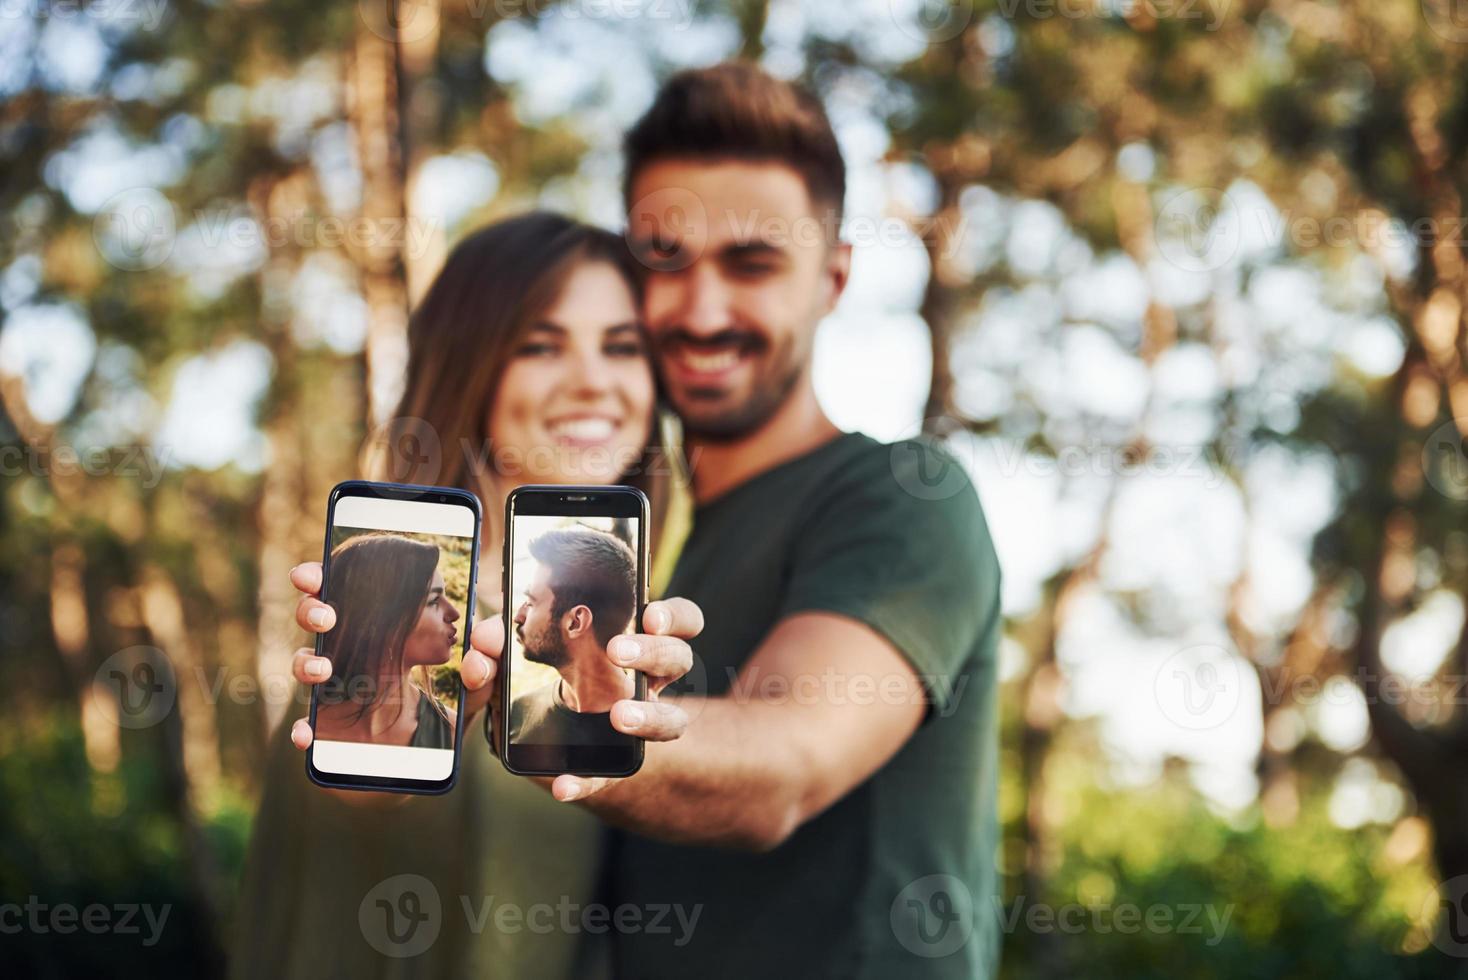 segurando dois smartphones com fotos deles. lindo casal jovem se diverte na floresta durante o dia